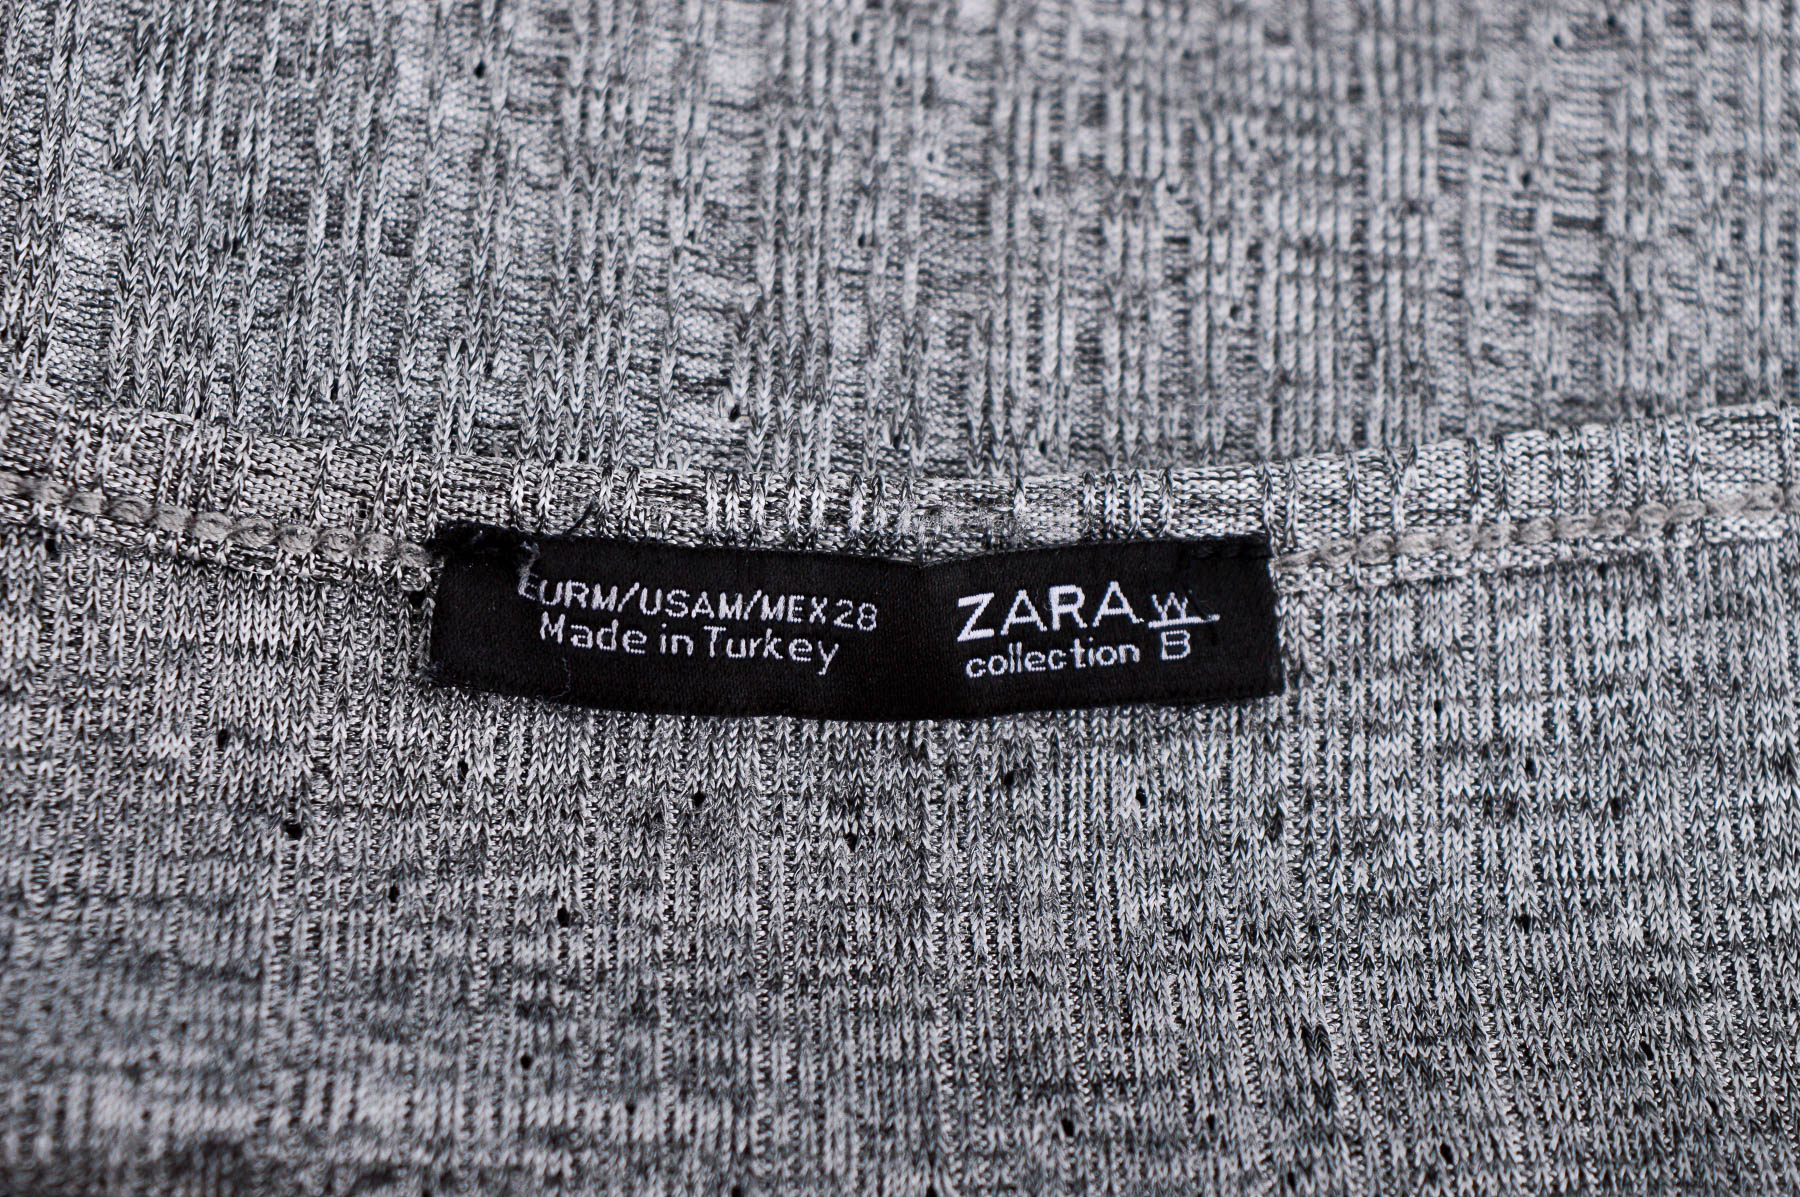 Women's blouse - ZARA W&B Collection - 2